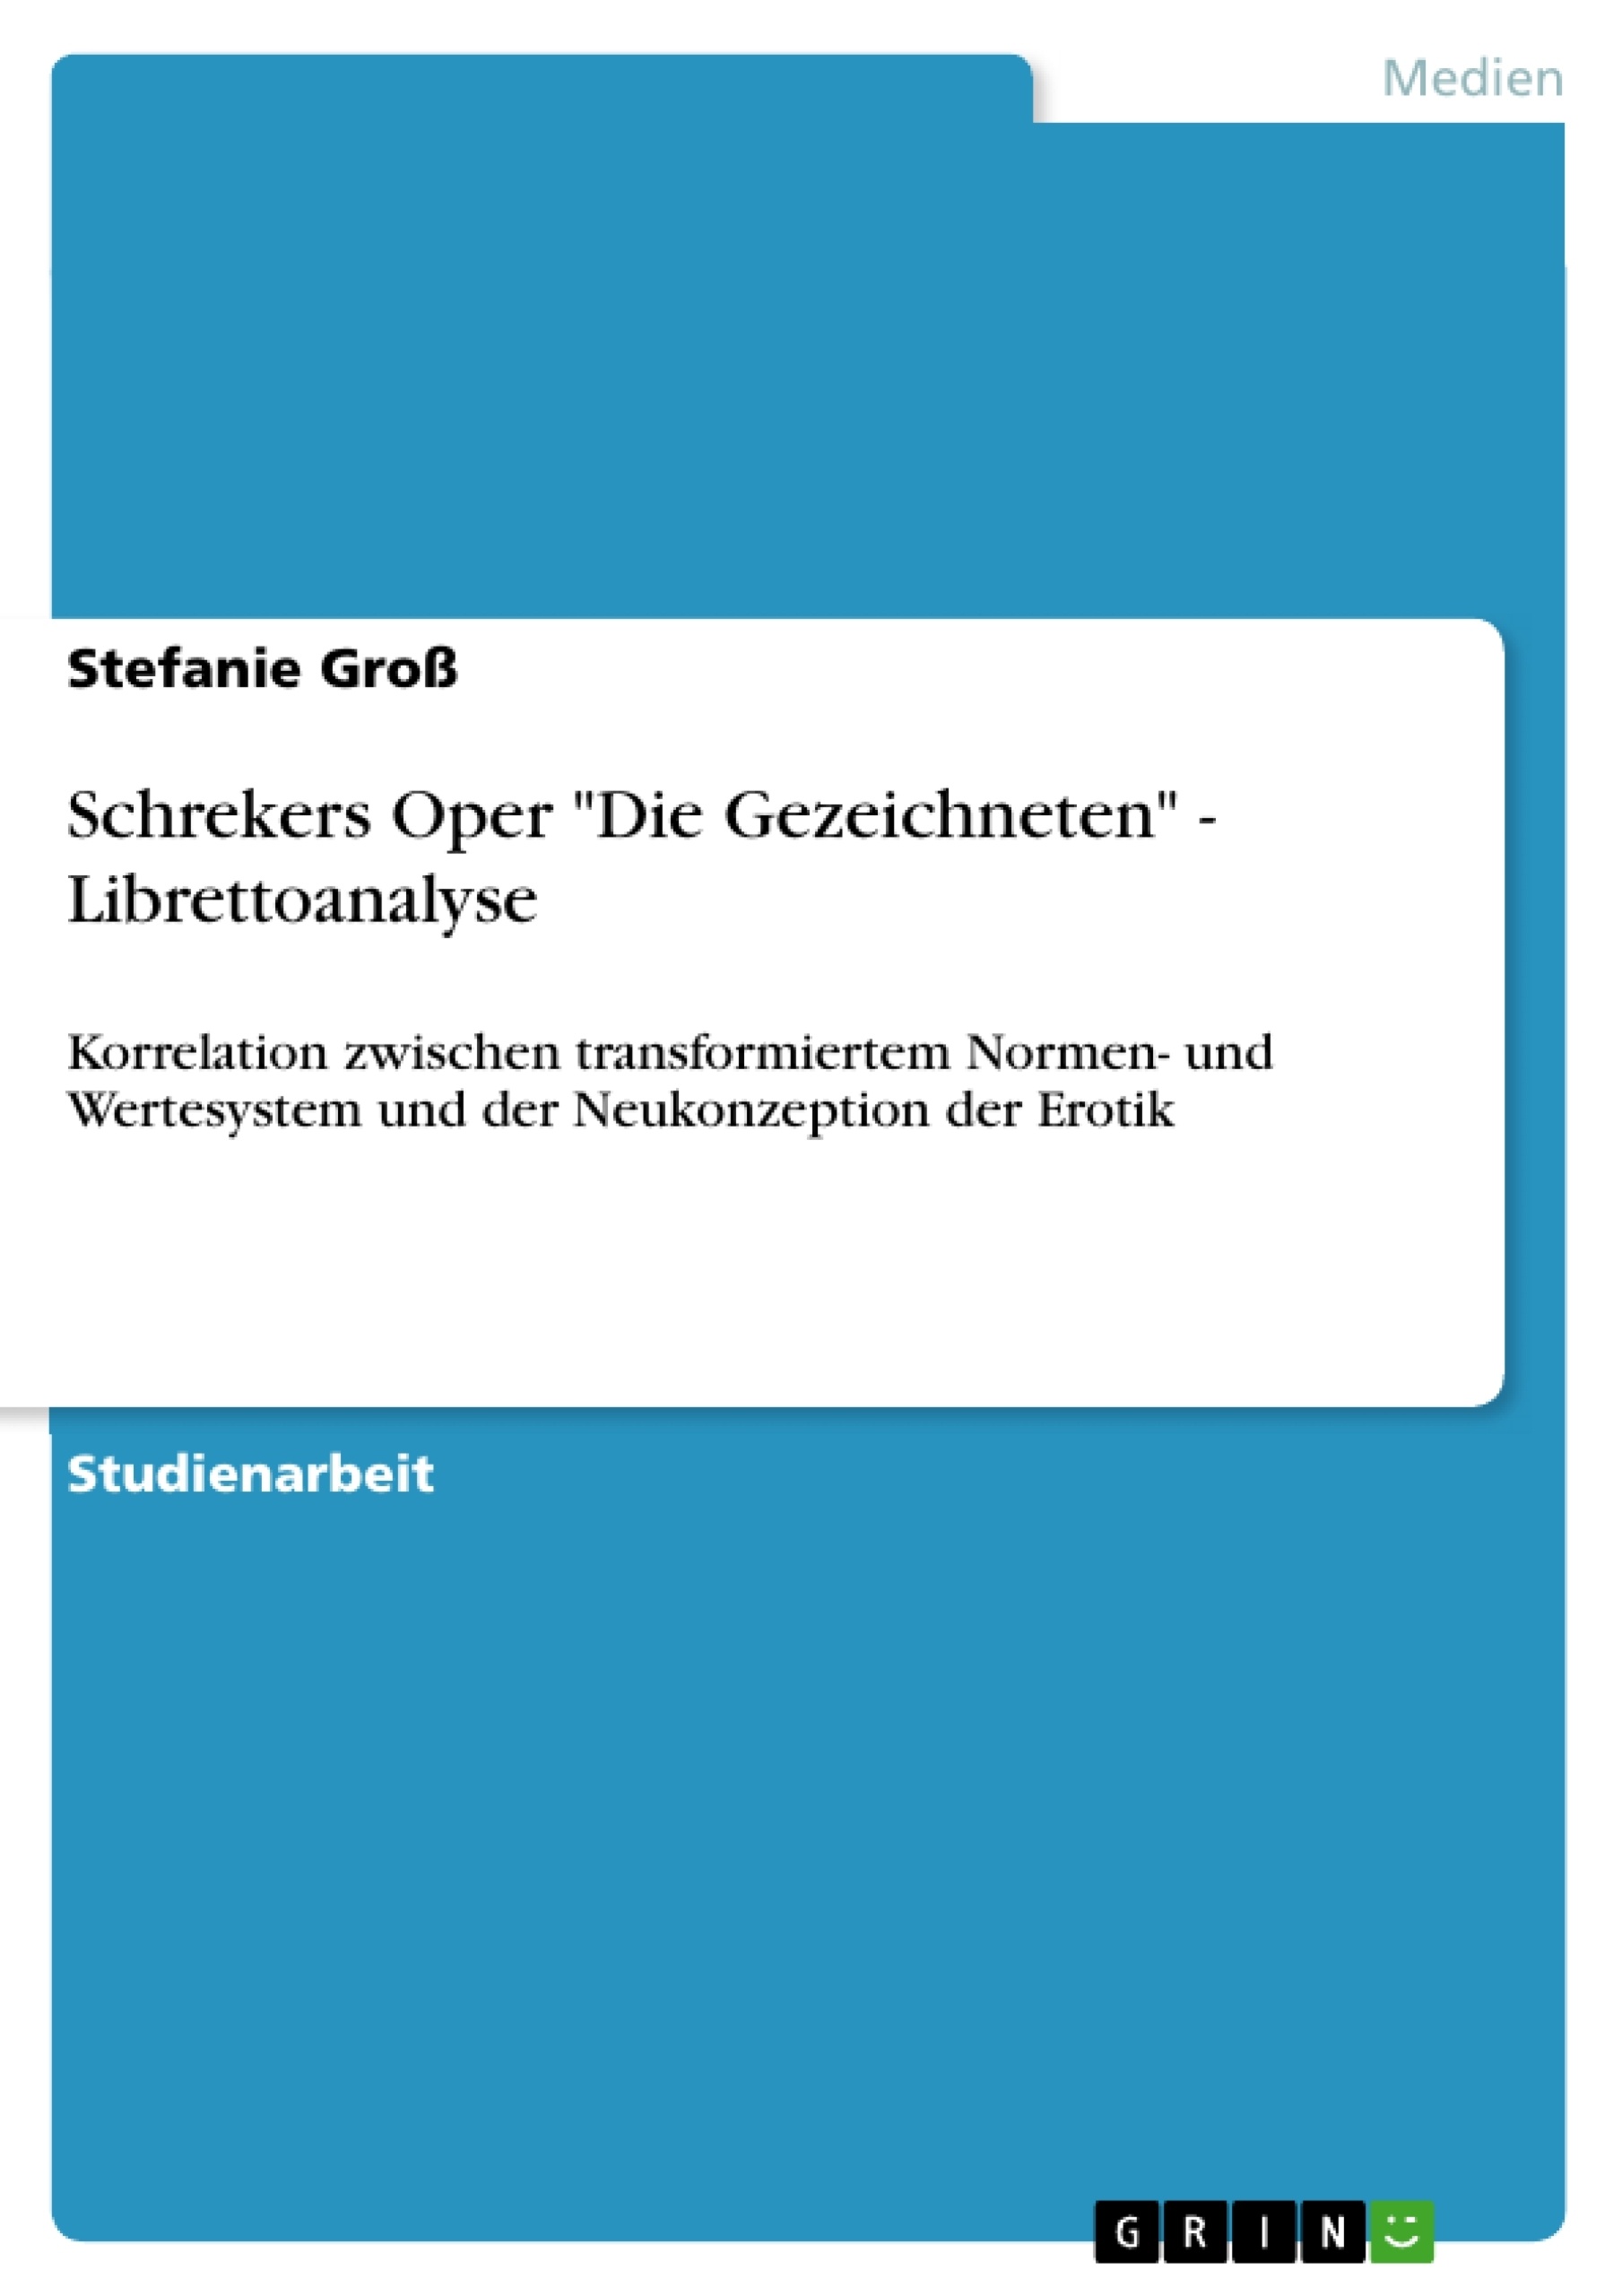 Title: Schrekers Oper "Die Gezeichneten" - Librettoanalyse